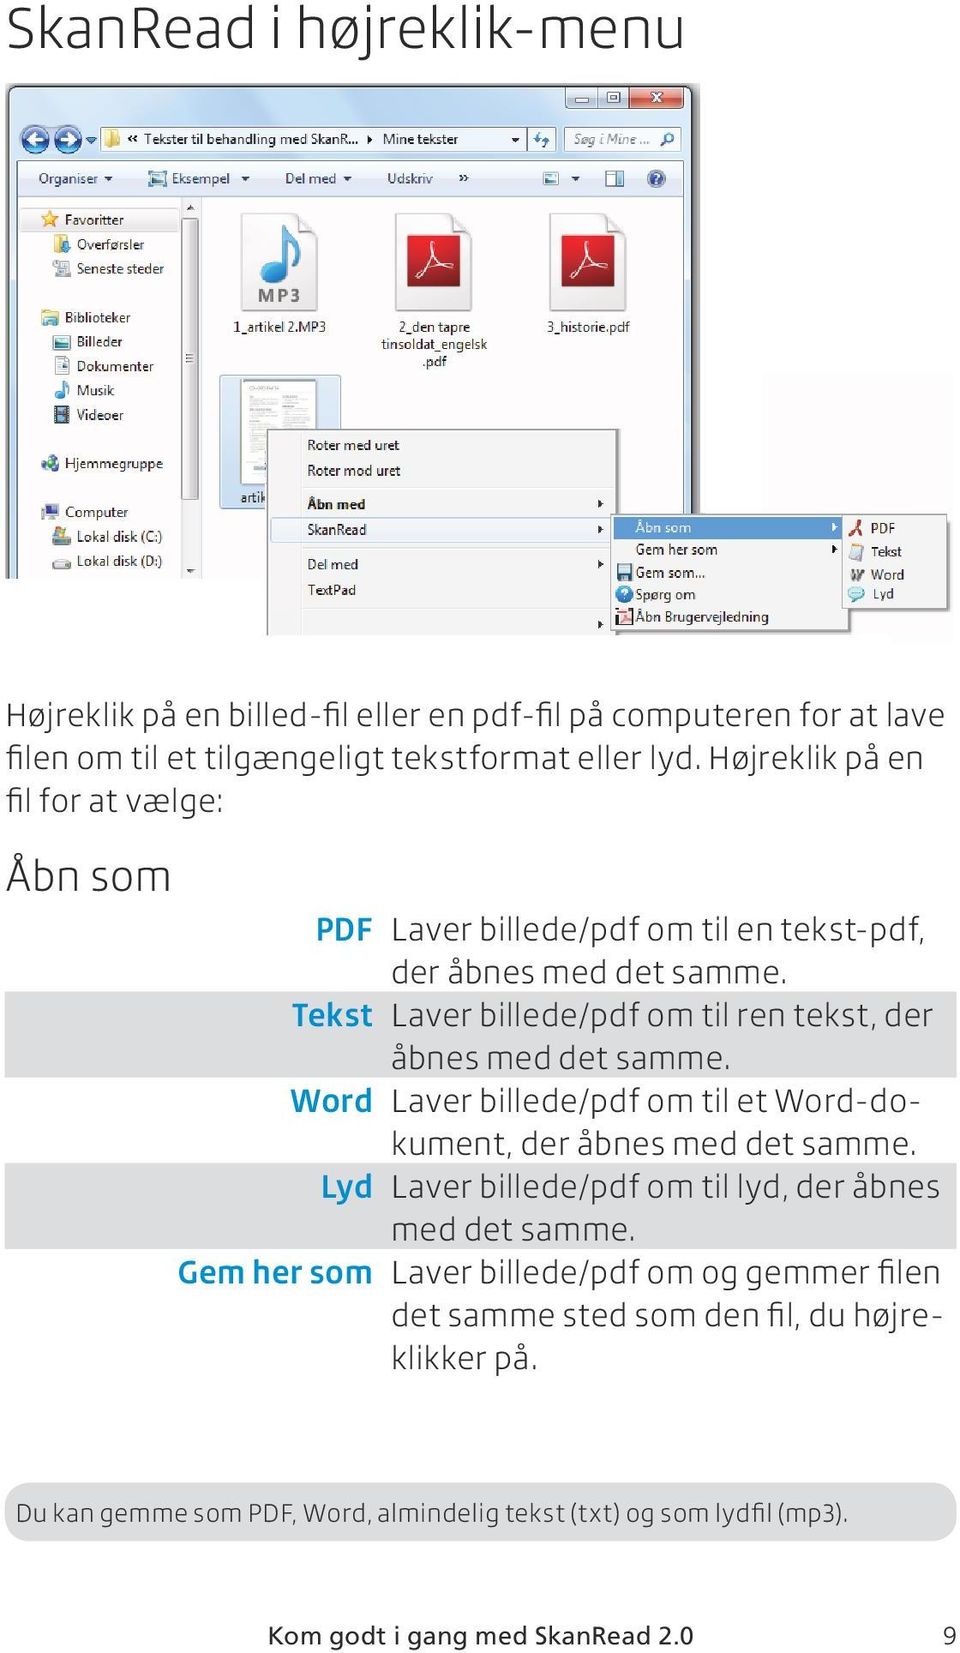 Tekst Laver billede/pdf om til ren tekst, der åbnes med det samme. Word Laver billede/pdf om til et Word-dokument, der åbnes med det samme.